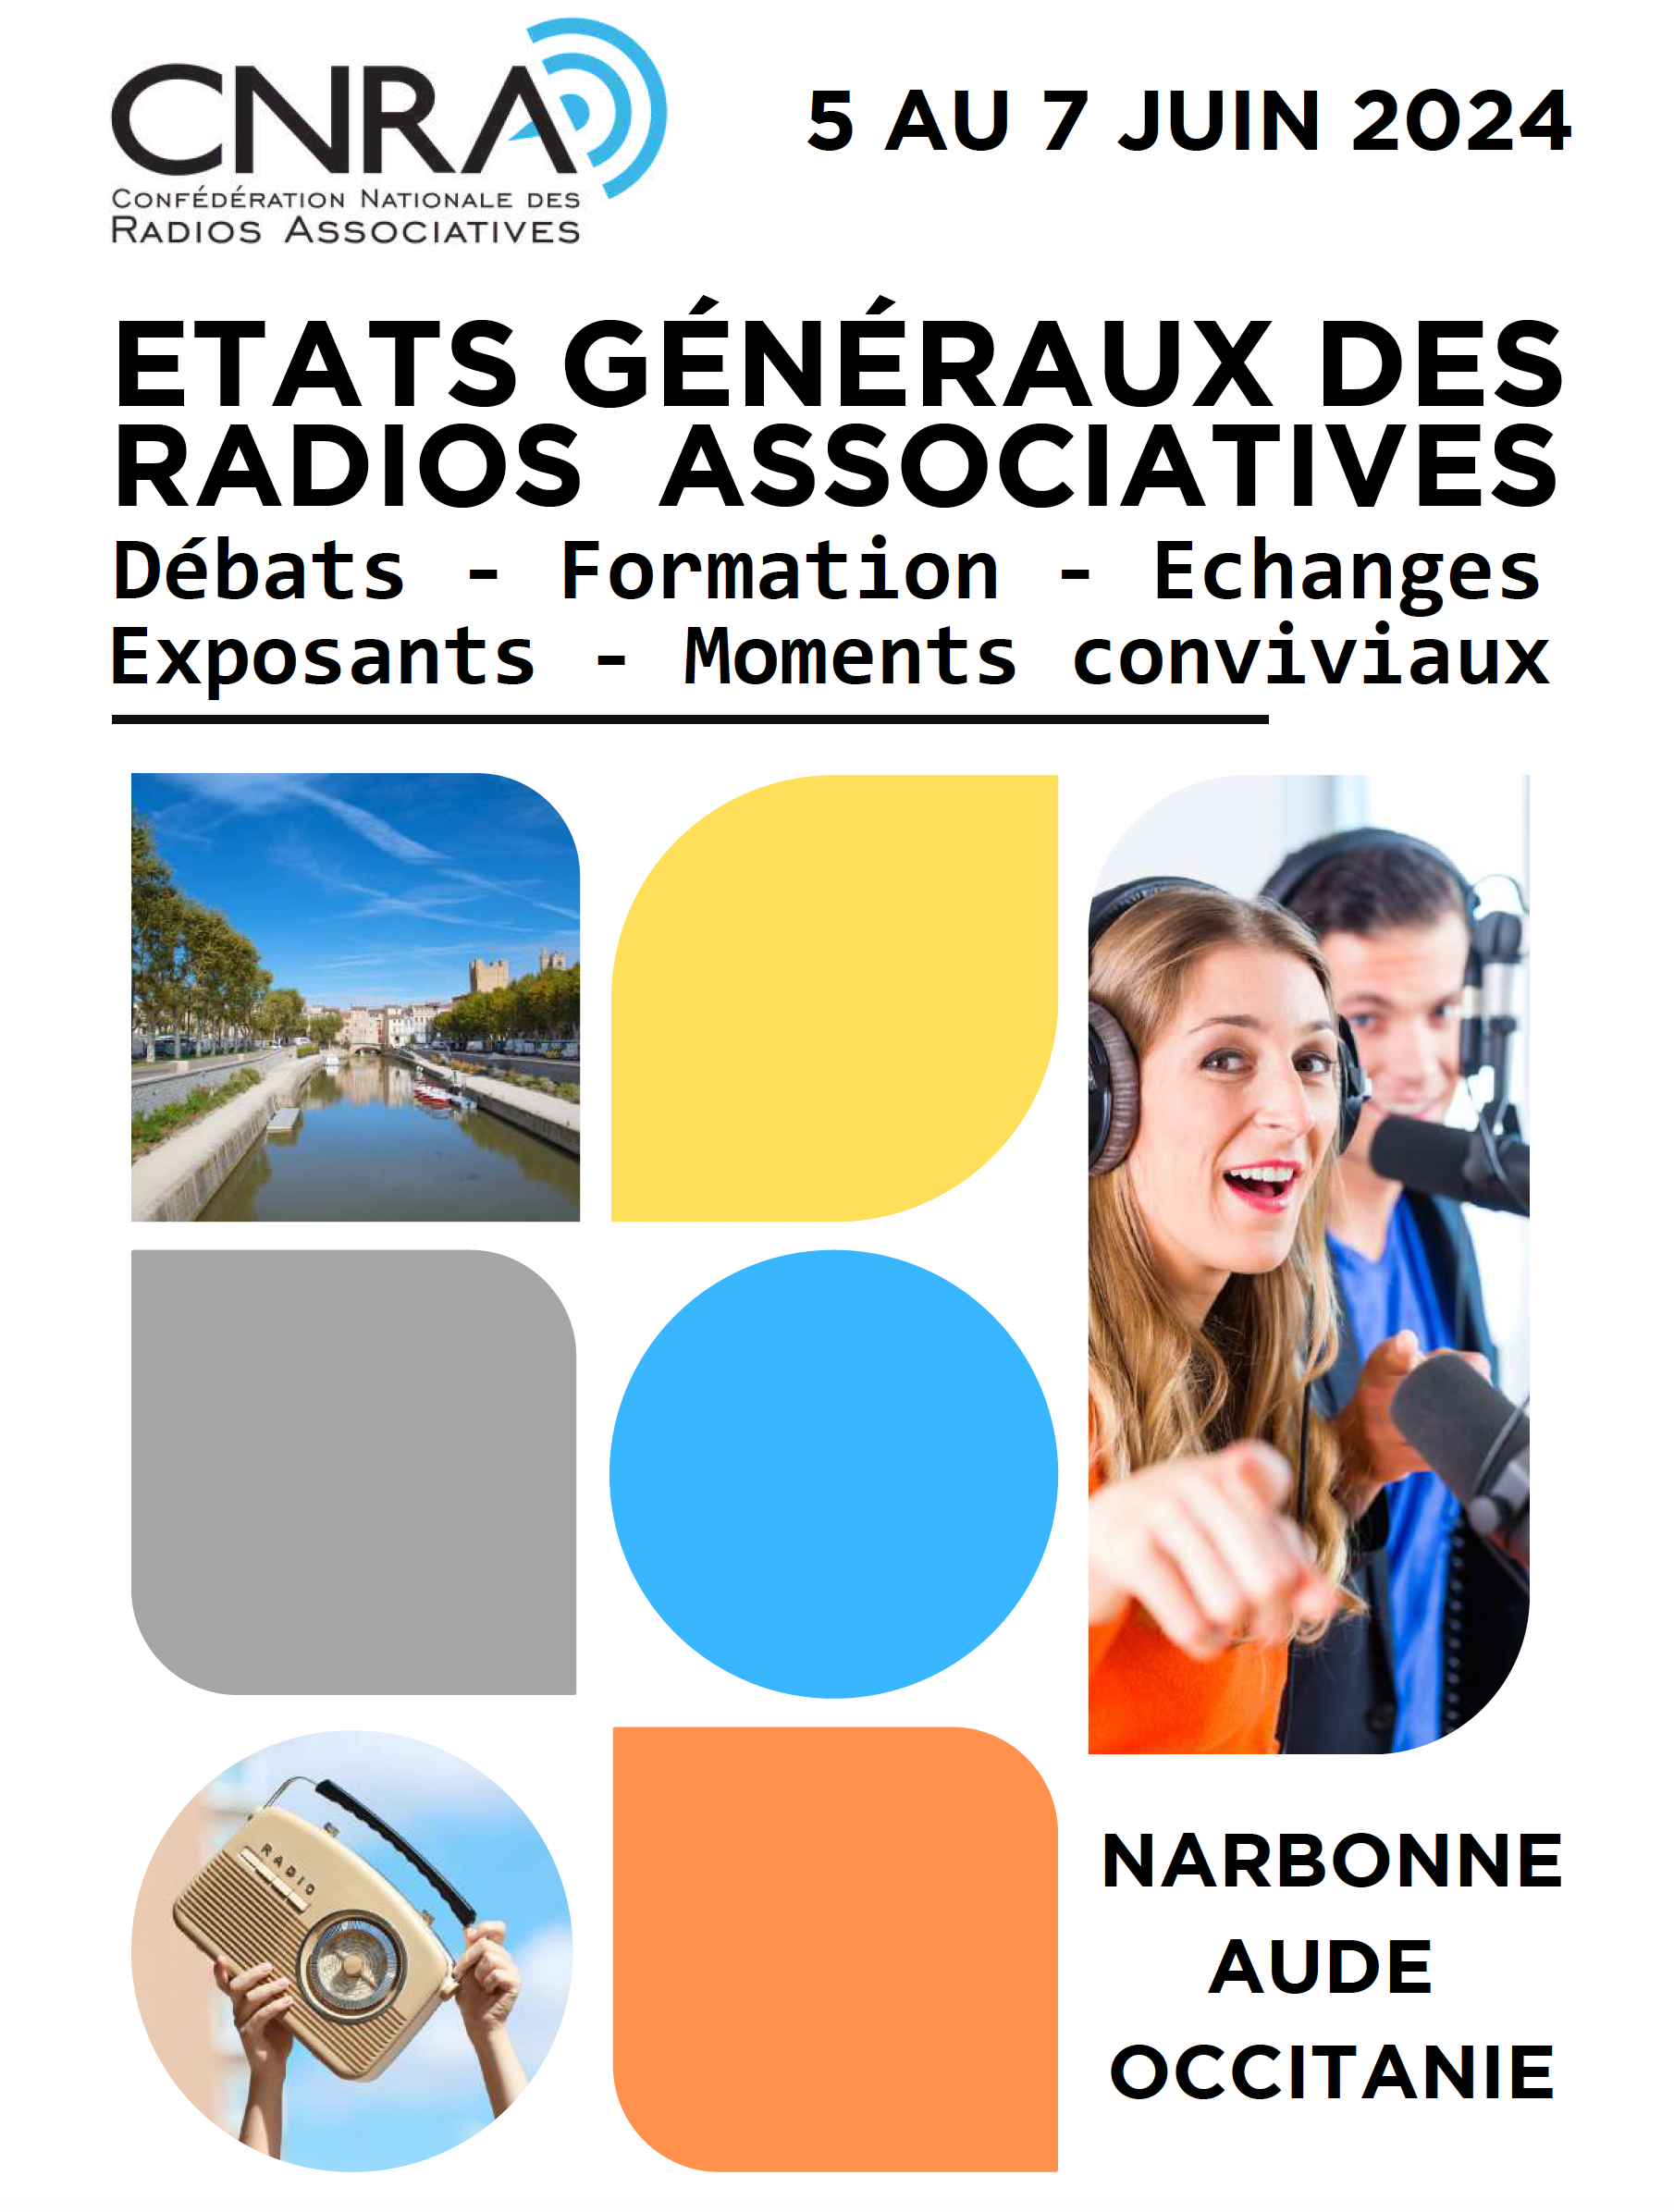 La CNRA organise les États Généraux des radios associatives à Narbonne